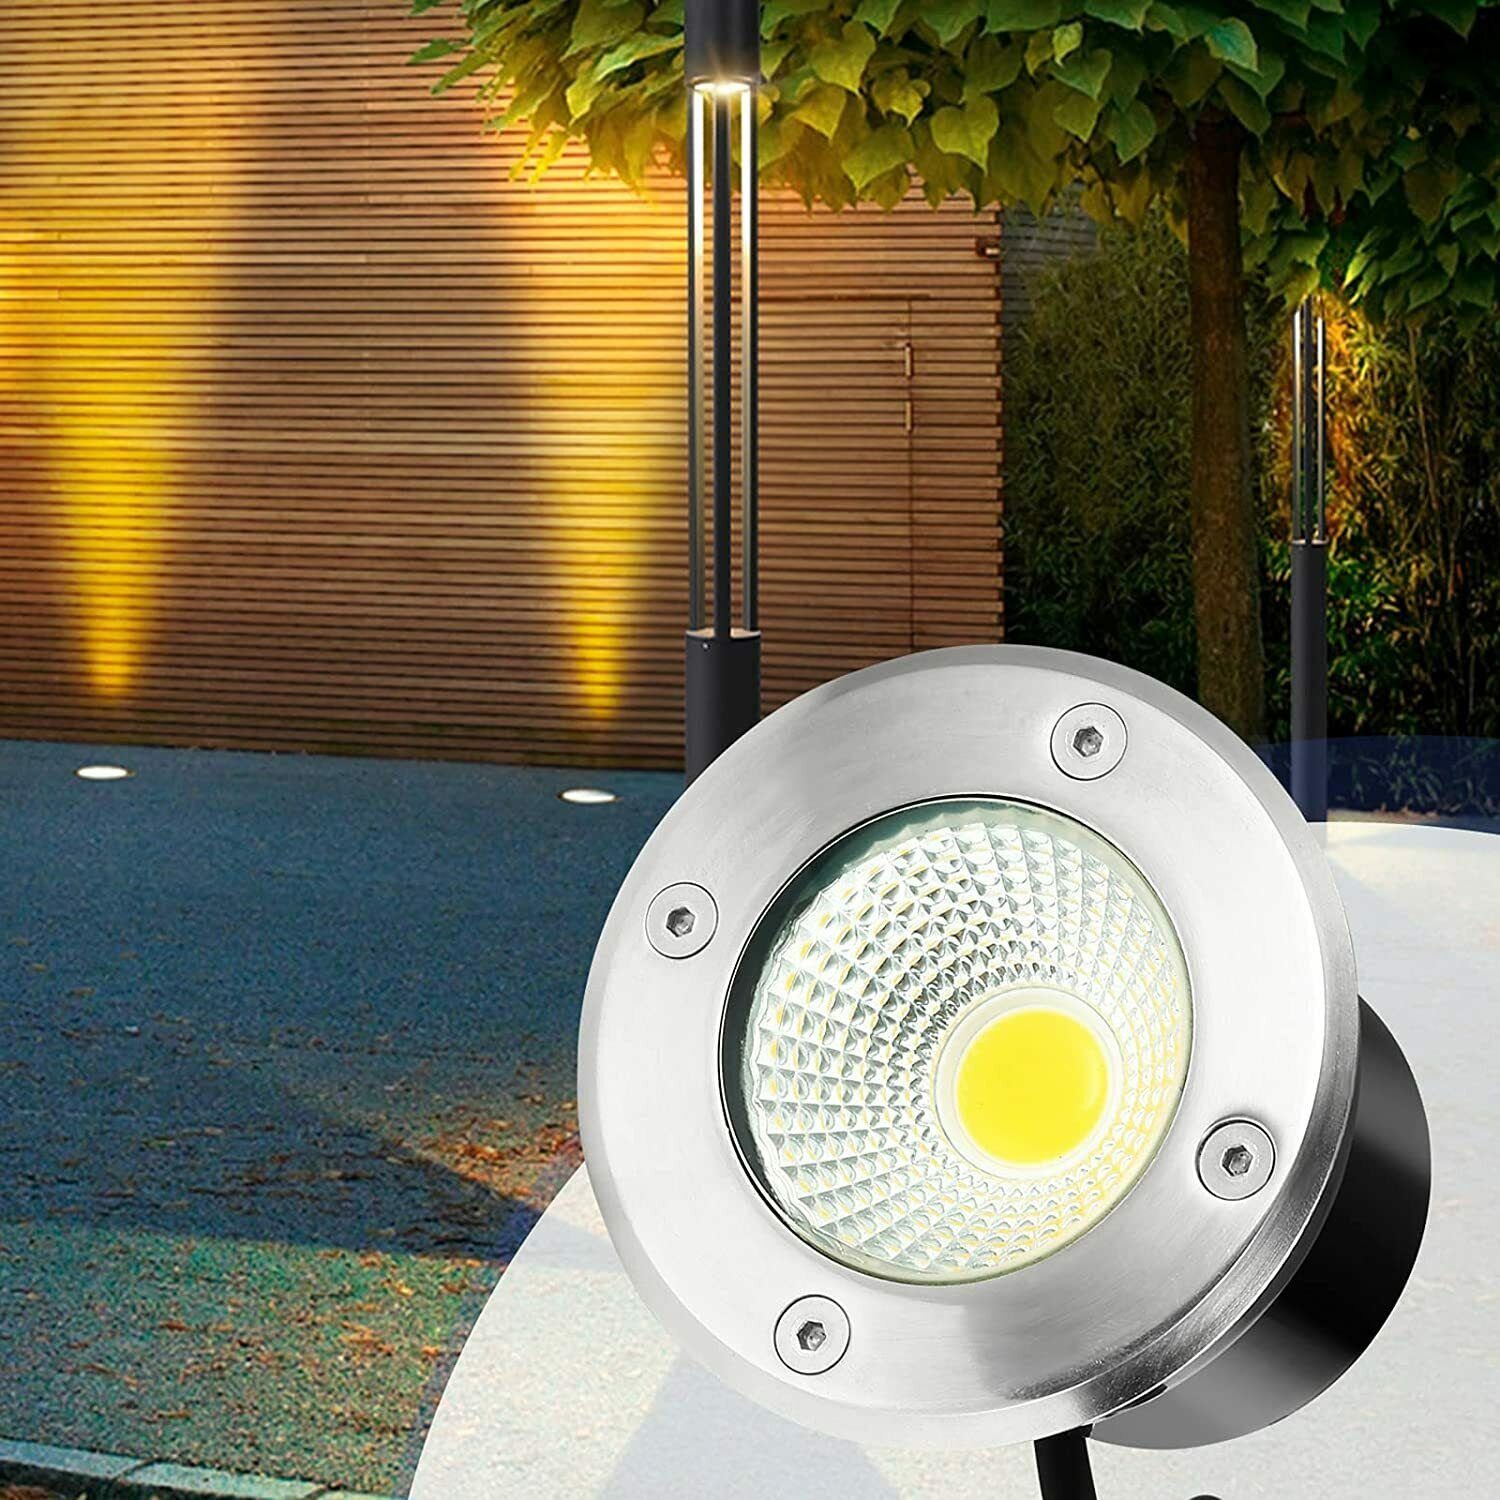 LETGOSPT LED Einbaustrahler LED 230V, Fassung GU10 Glühbirne wechselbar, Einbaustrahler mit Garden Bodeneinbauleuchten, Befahrbar IP67 Außen in GU10 Warmweiß, Rund rund/quadrat, Einbauspot, LED Edelstahl Stoßfest